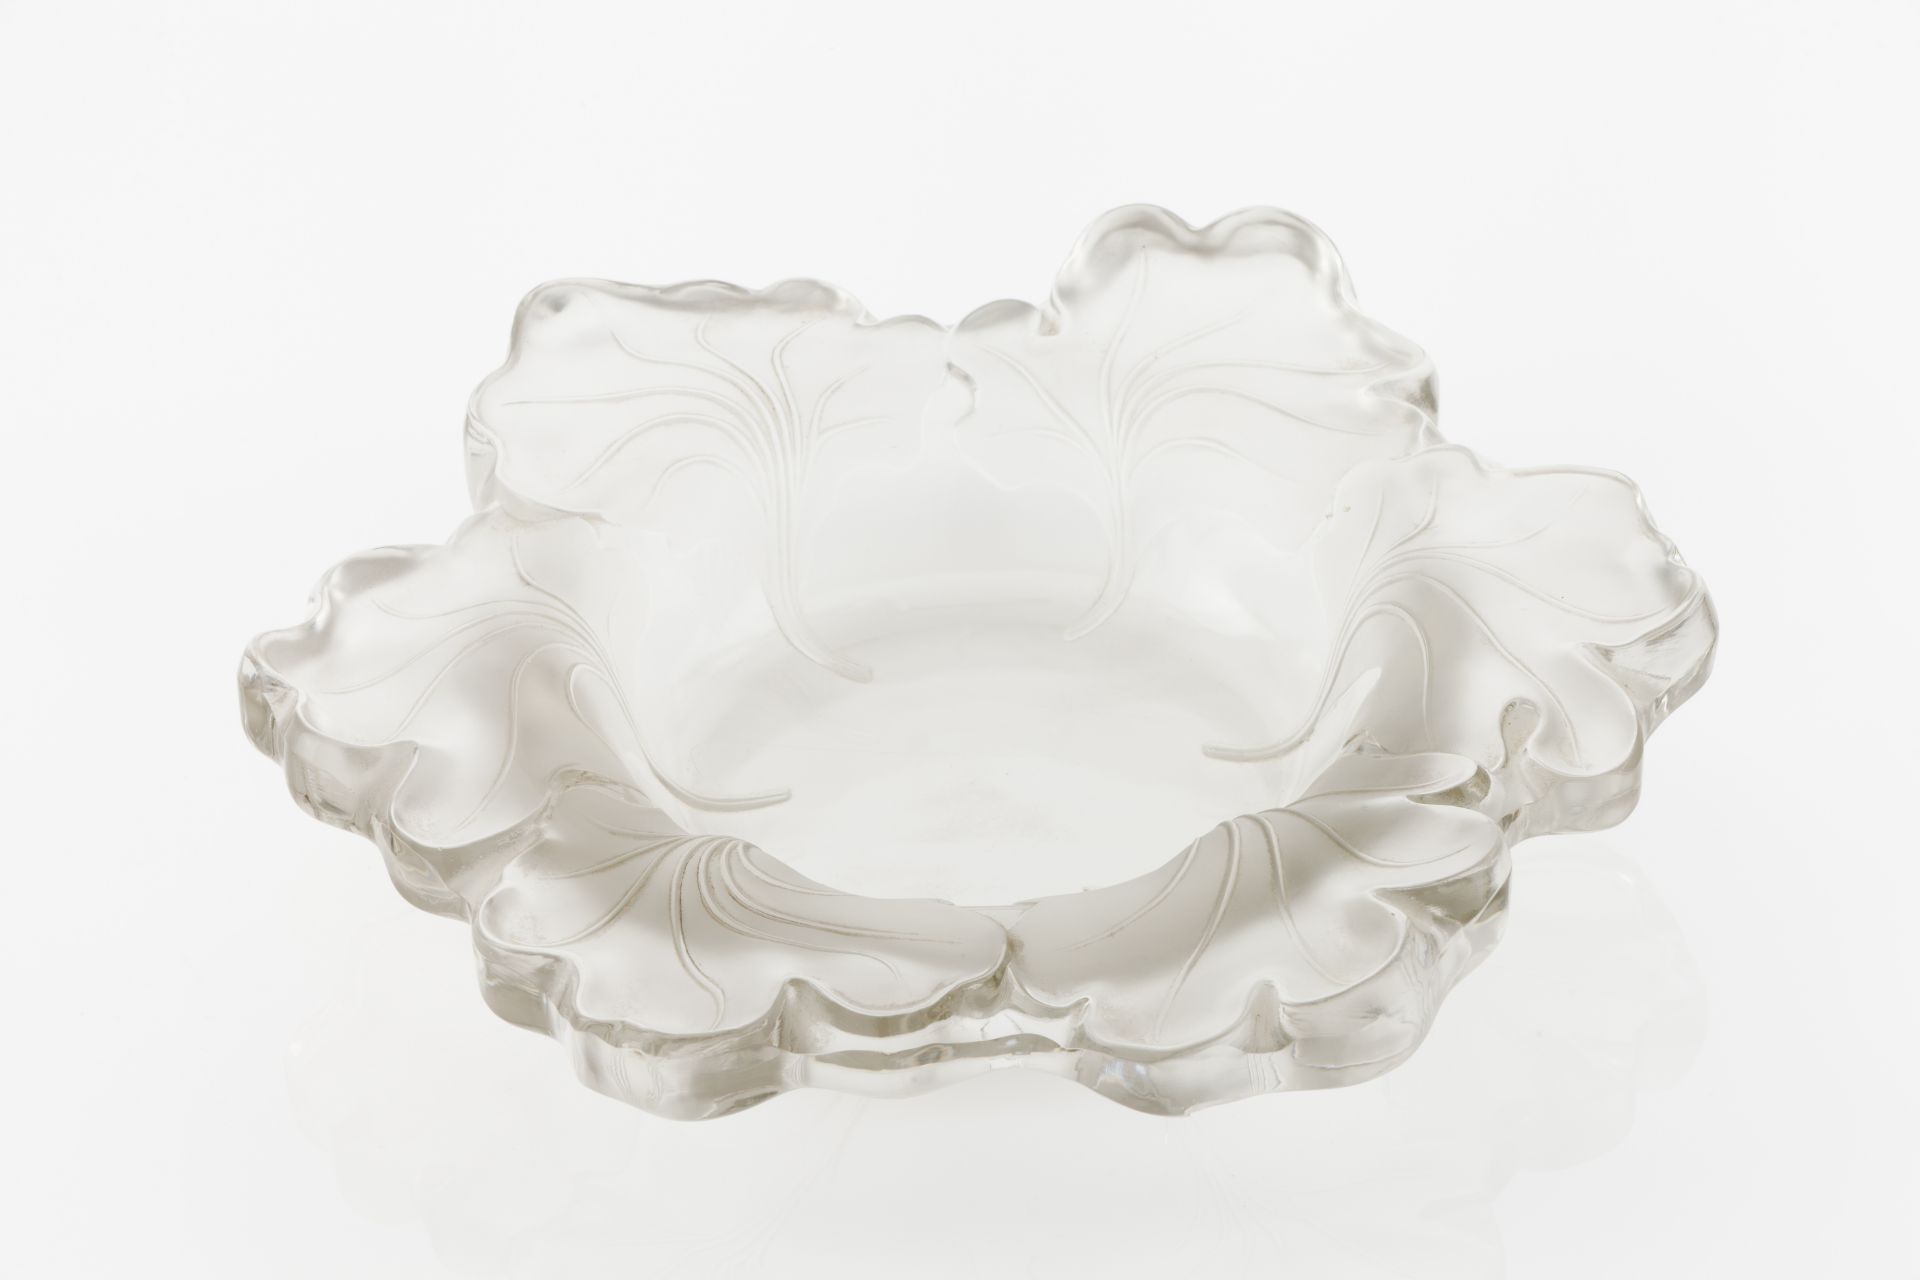 René Lalique, "Honfleur" bowl